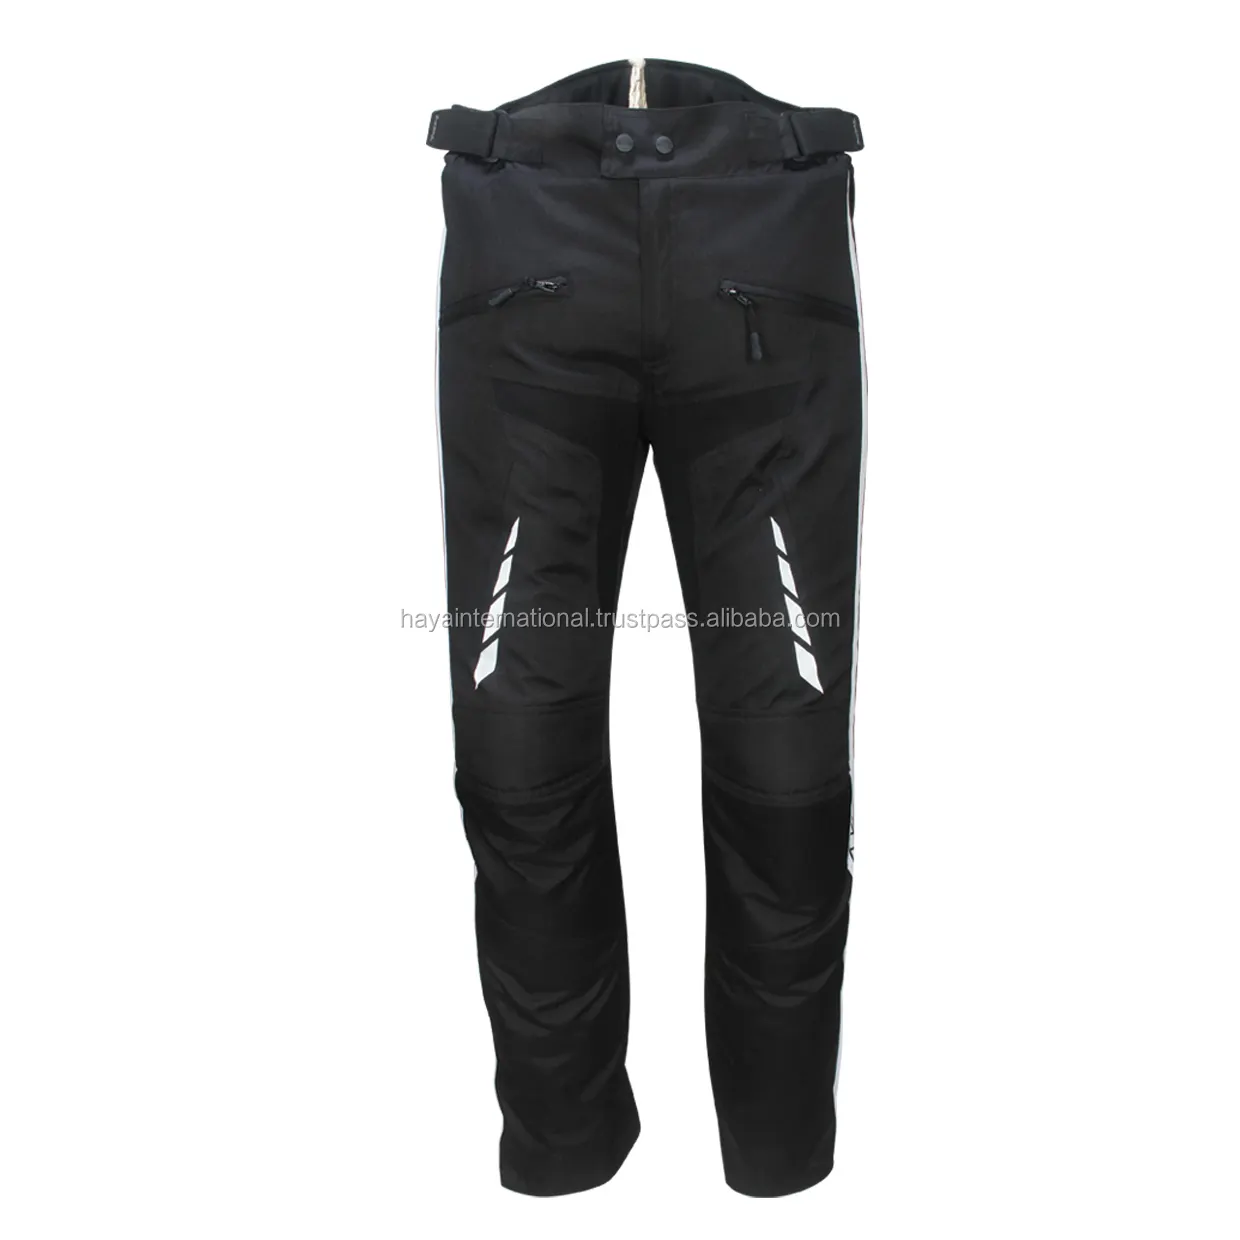 Pantalones vaqueros deportivos para motocicleta, tela con protección para rodillas, Cordura